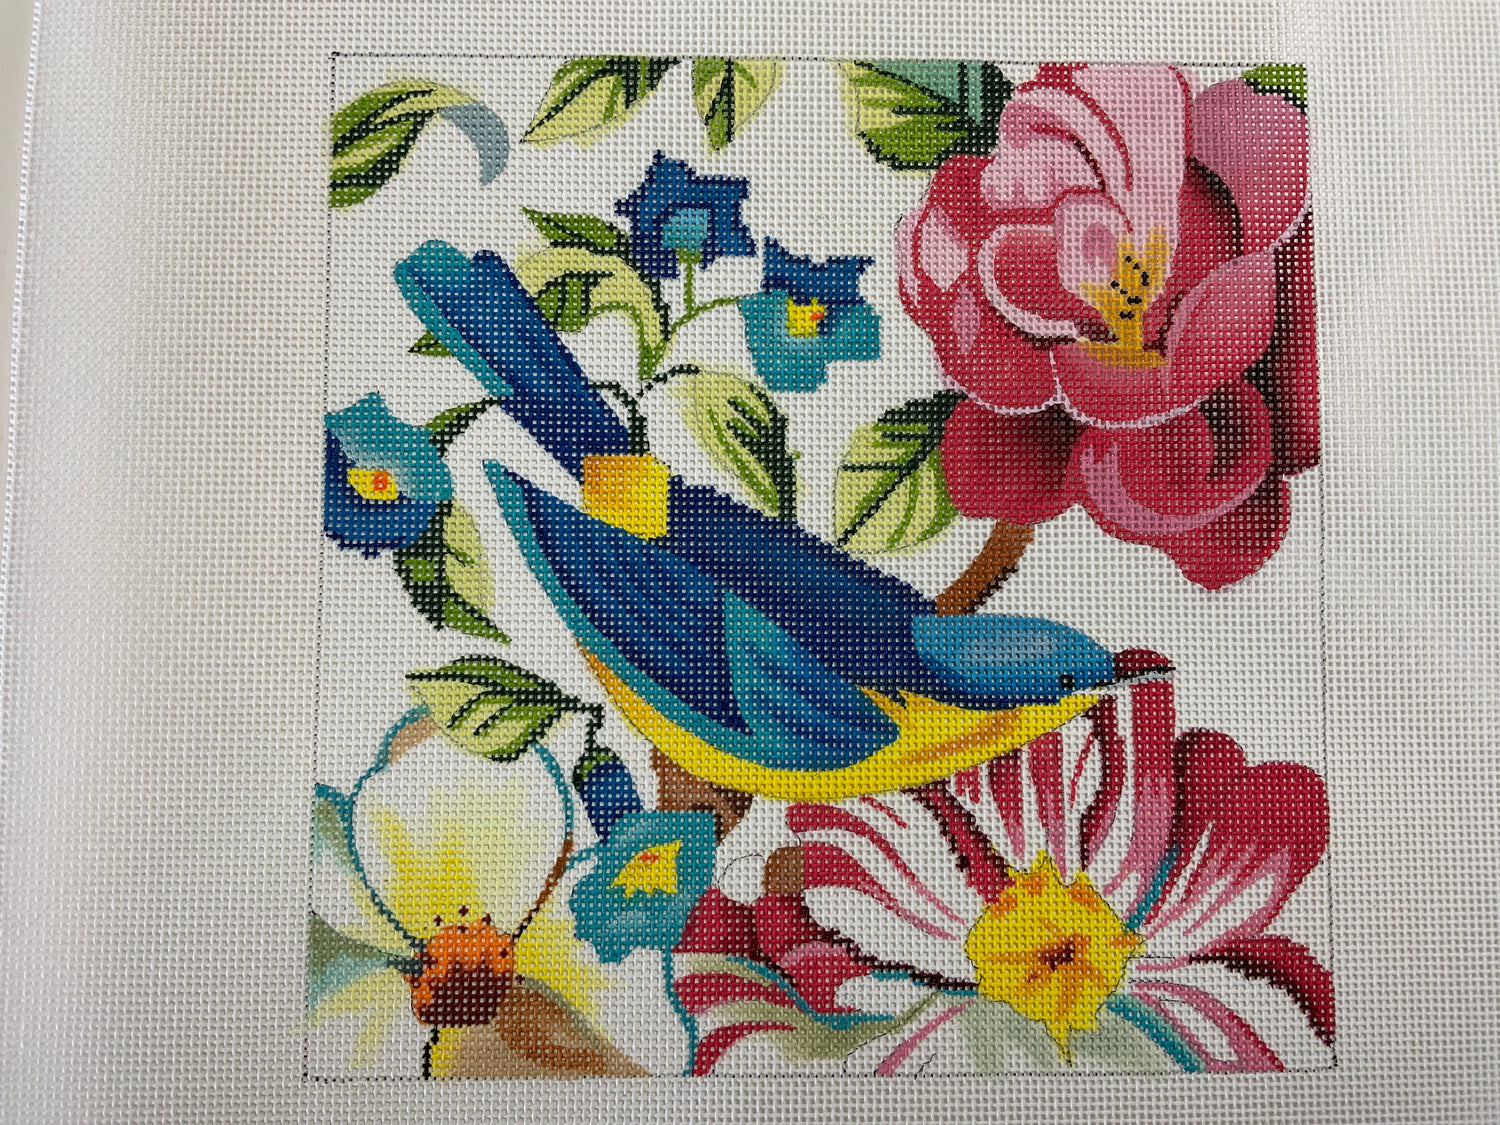 Floral with Blue Bird Needlecraft Canvas